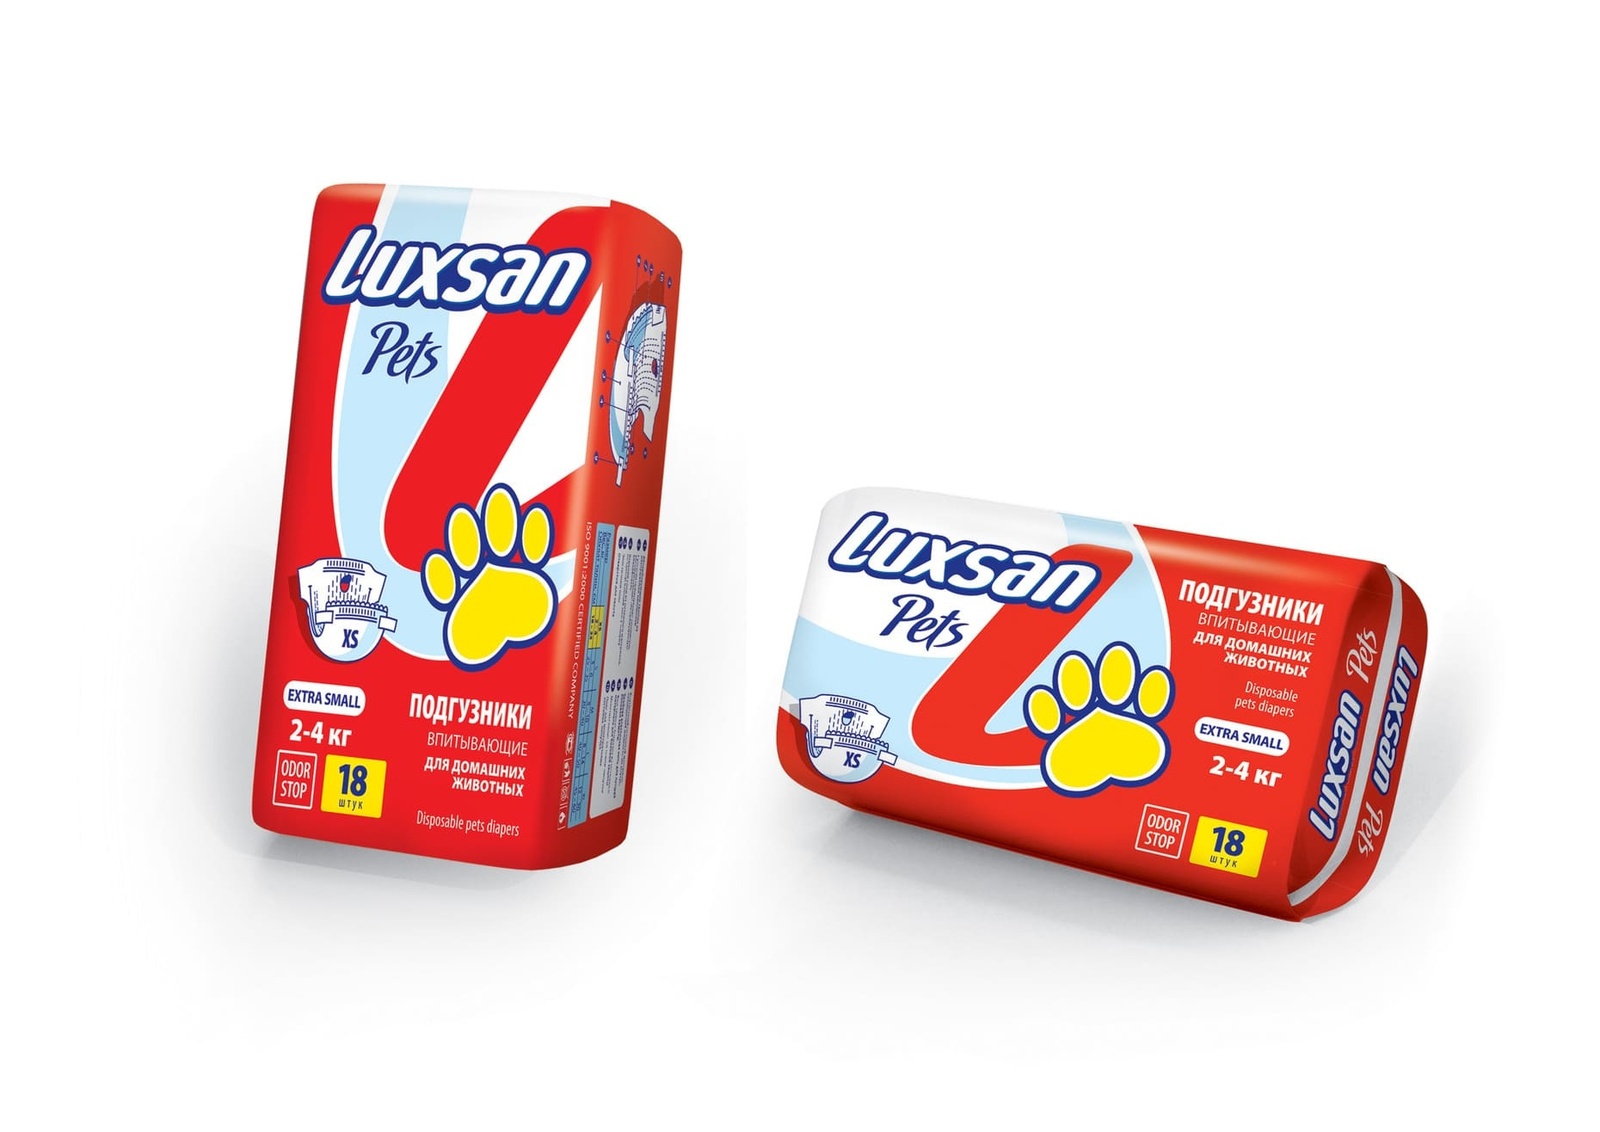 Luxsan Luxsan подгузники для животных: 2-4 кг, 18 шт. (320 г) стельки corbby odor stop black латексн пена нетканый матер безразм с актив углём от запаха